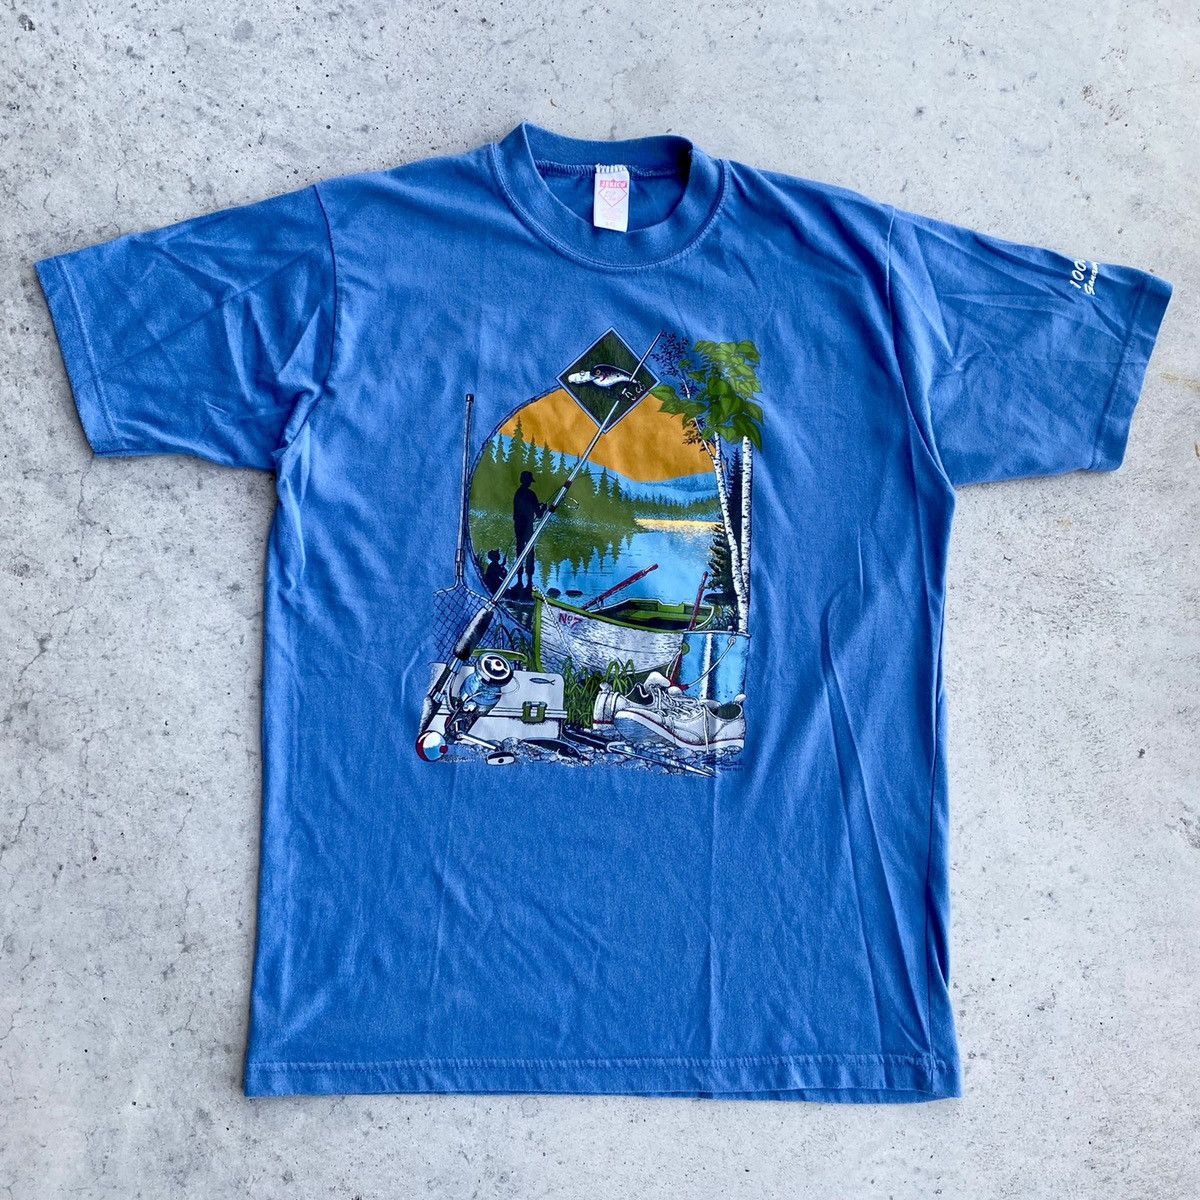 Field and Stream Tan Fishing Shirt, L